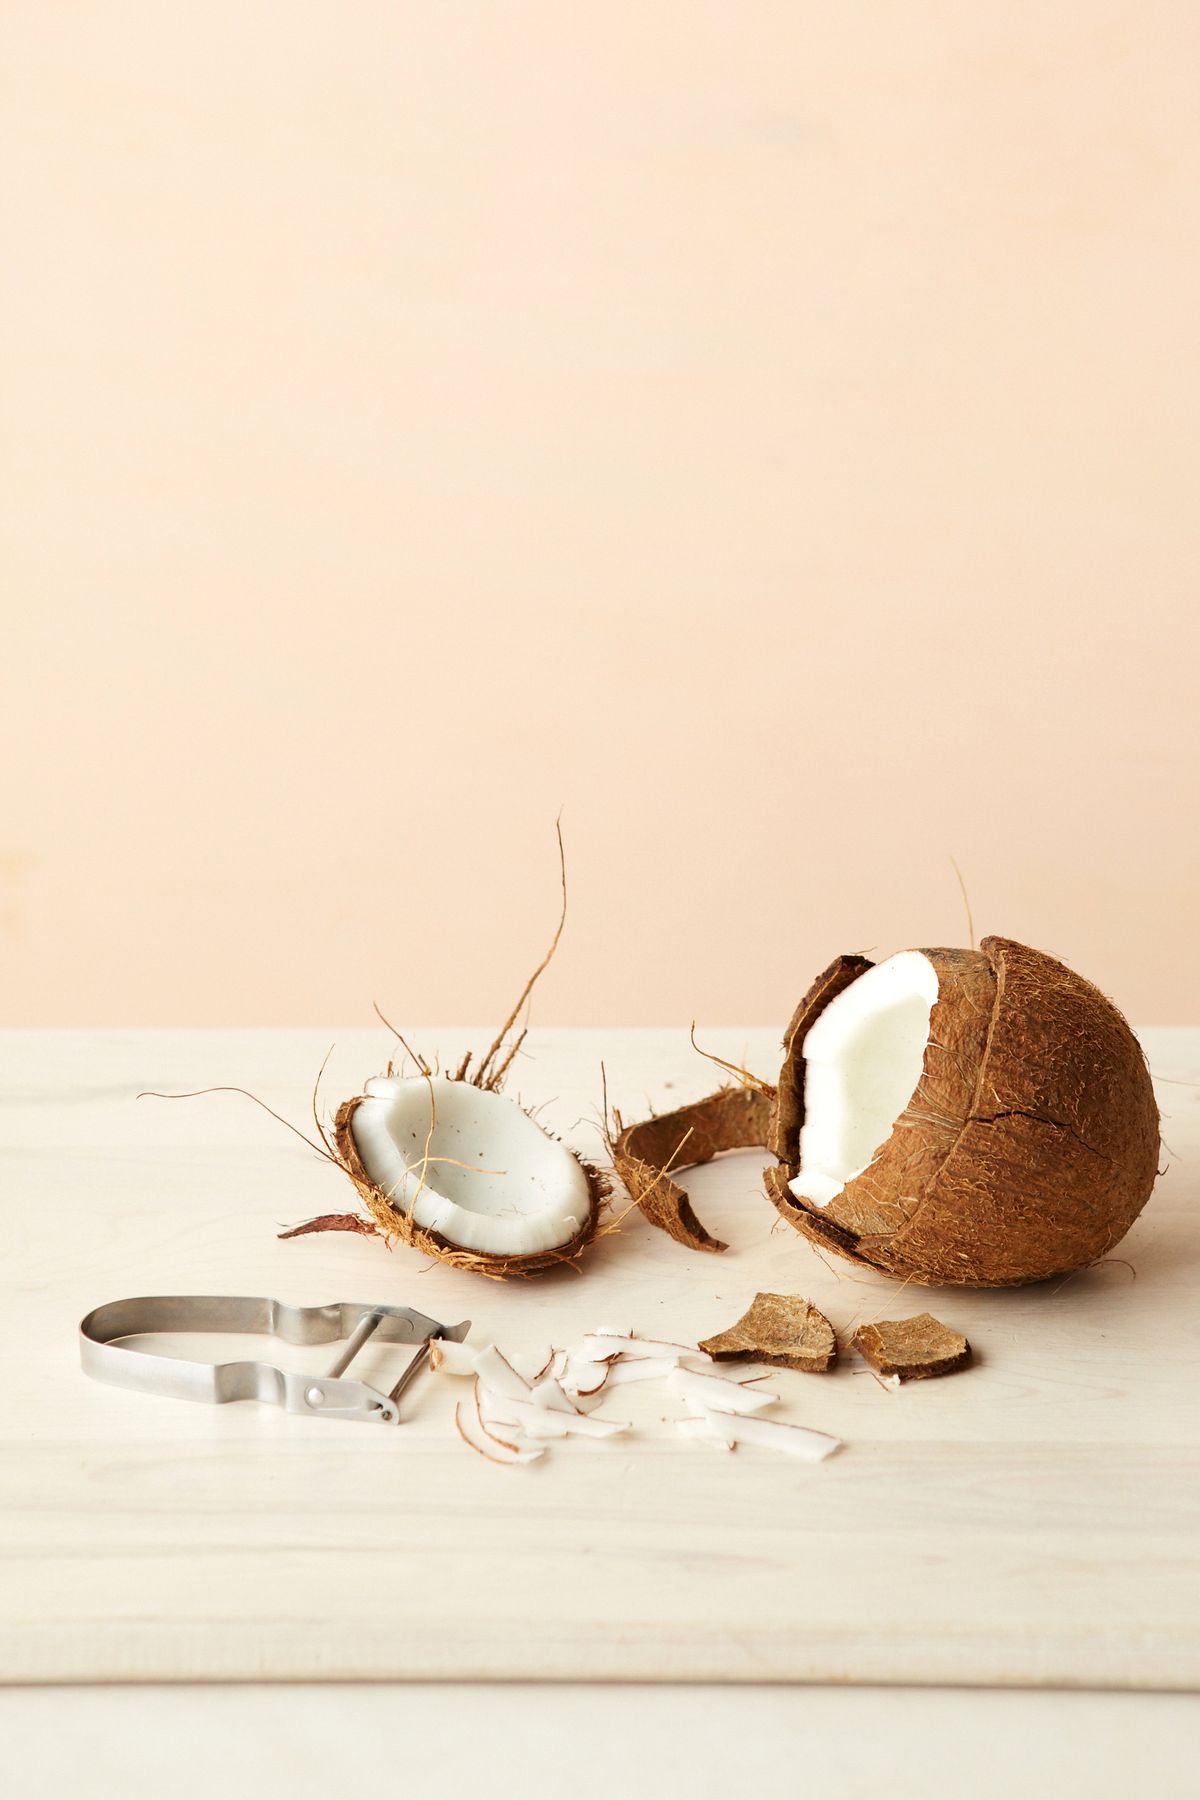 Ein Leitfaden für Kokosmilch, Kokosöl und die vielen anderen Kokosnuss-Nahrungsmittelprodukte im Lebensmittelgeschäft